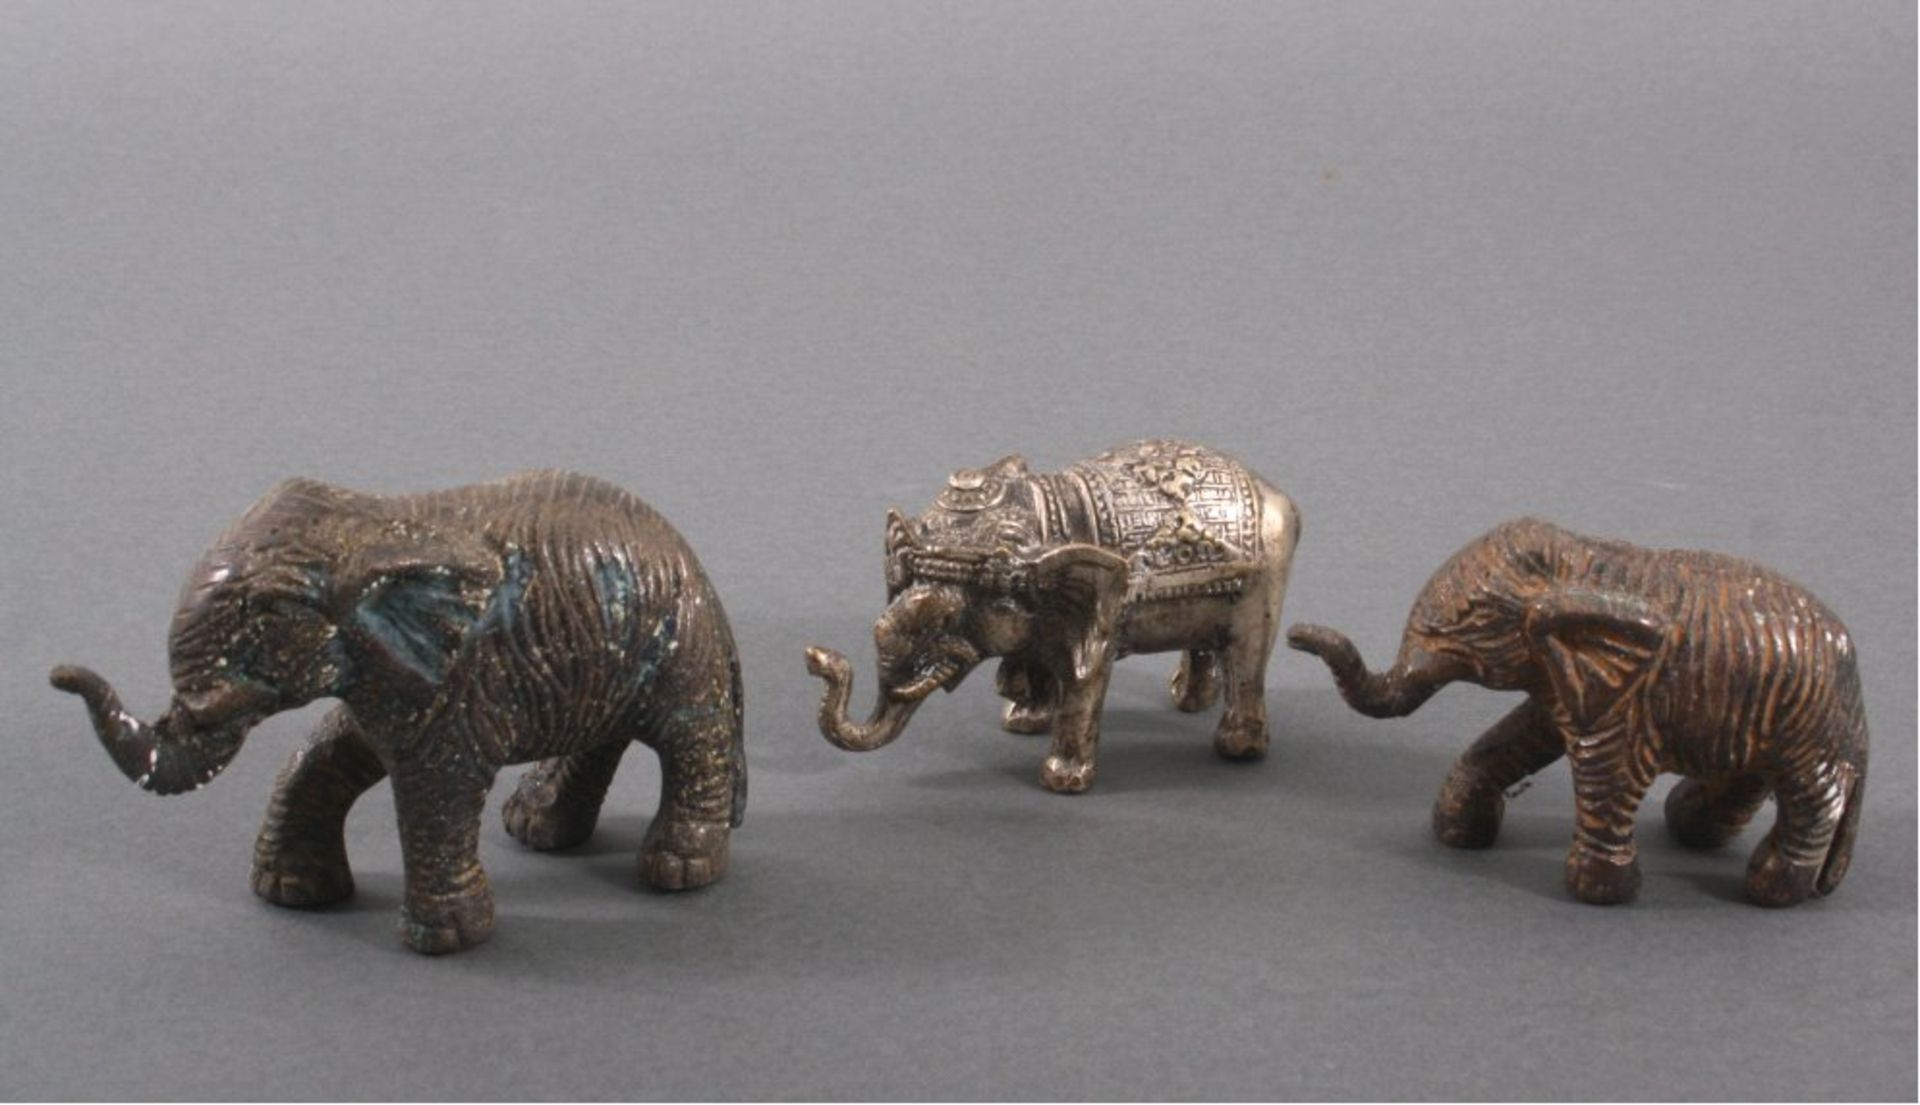 3 Bronzeelefanten aus Indien.Unterschiedliche Größen, schöne Patina, ca. Höhe 7 bis 9 cm,Länge 11-13